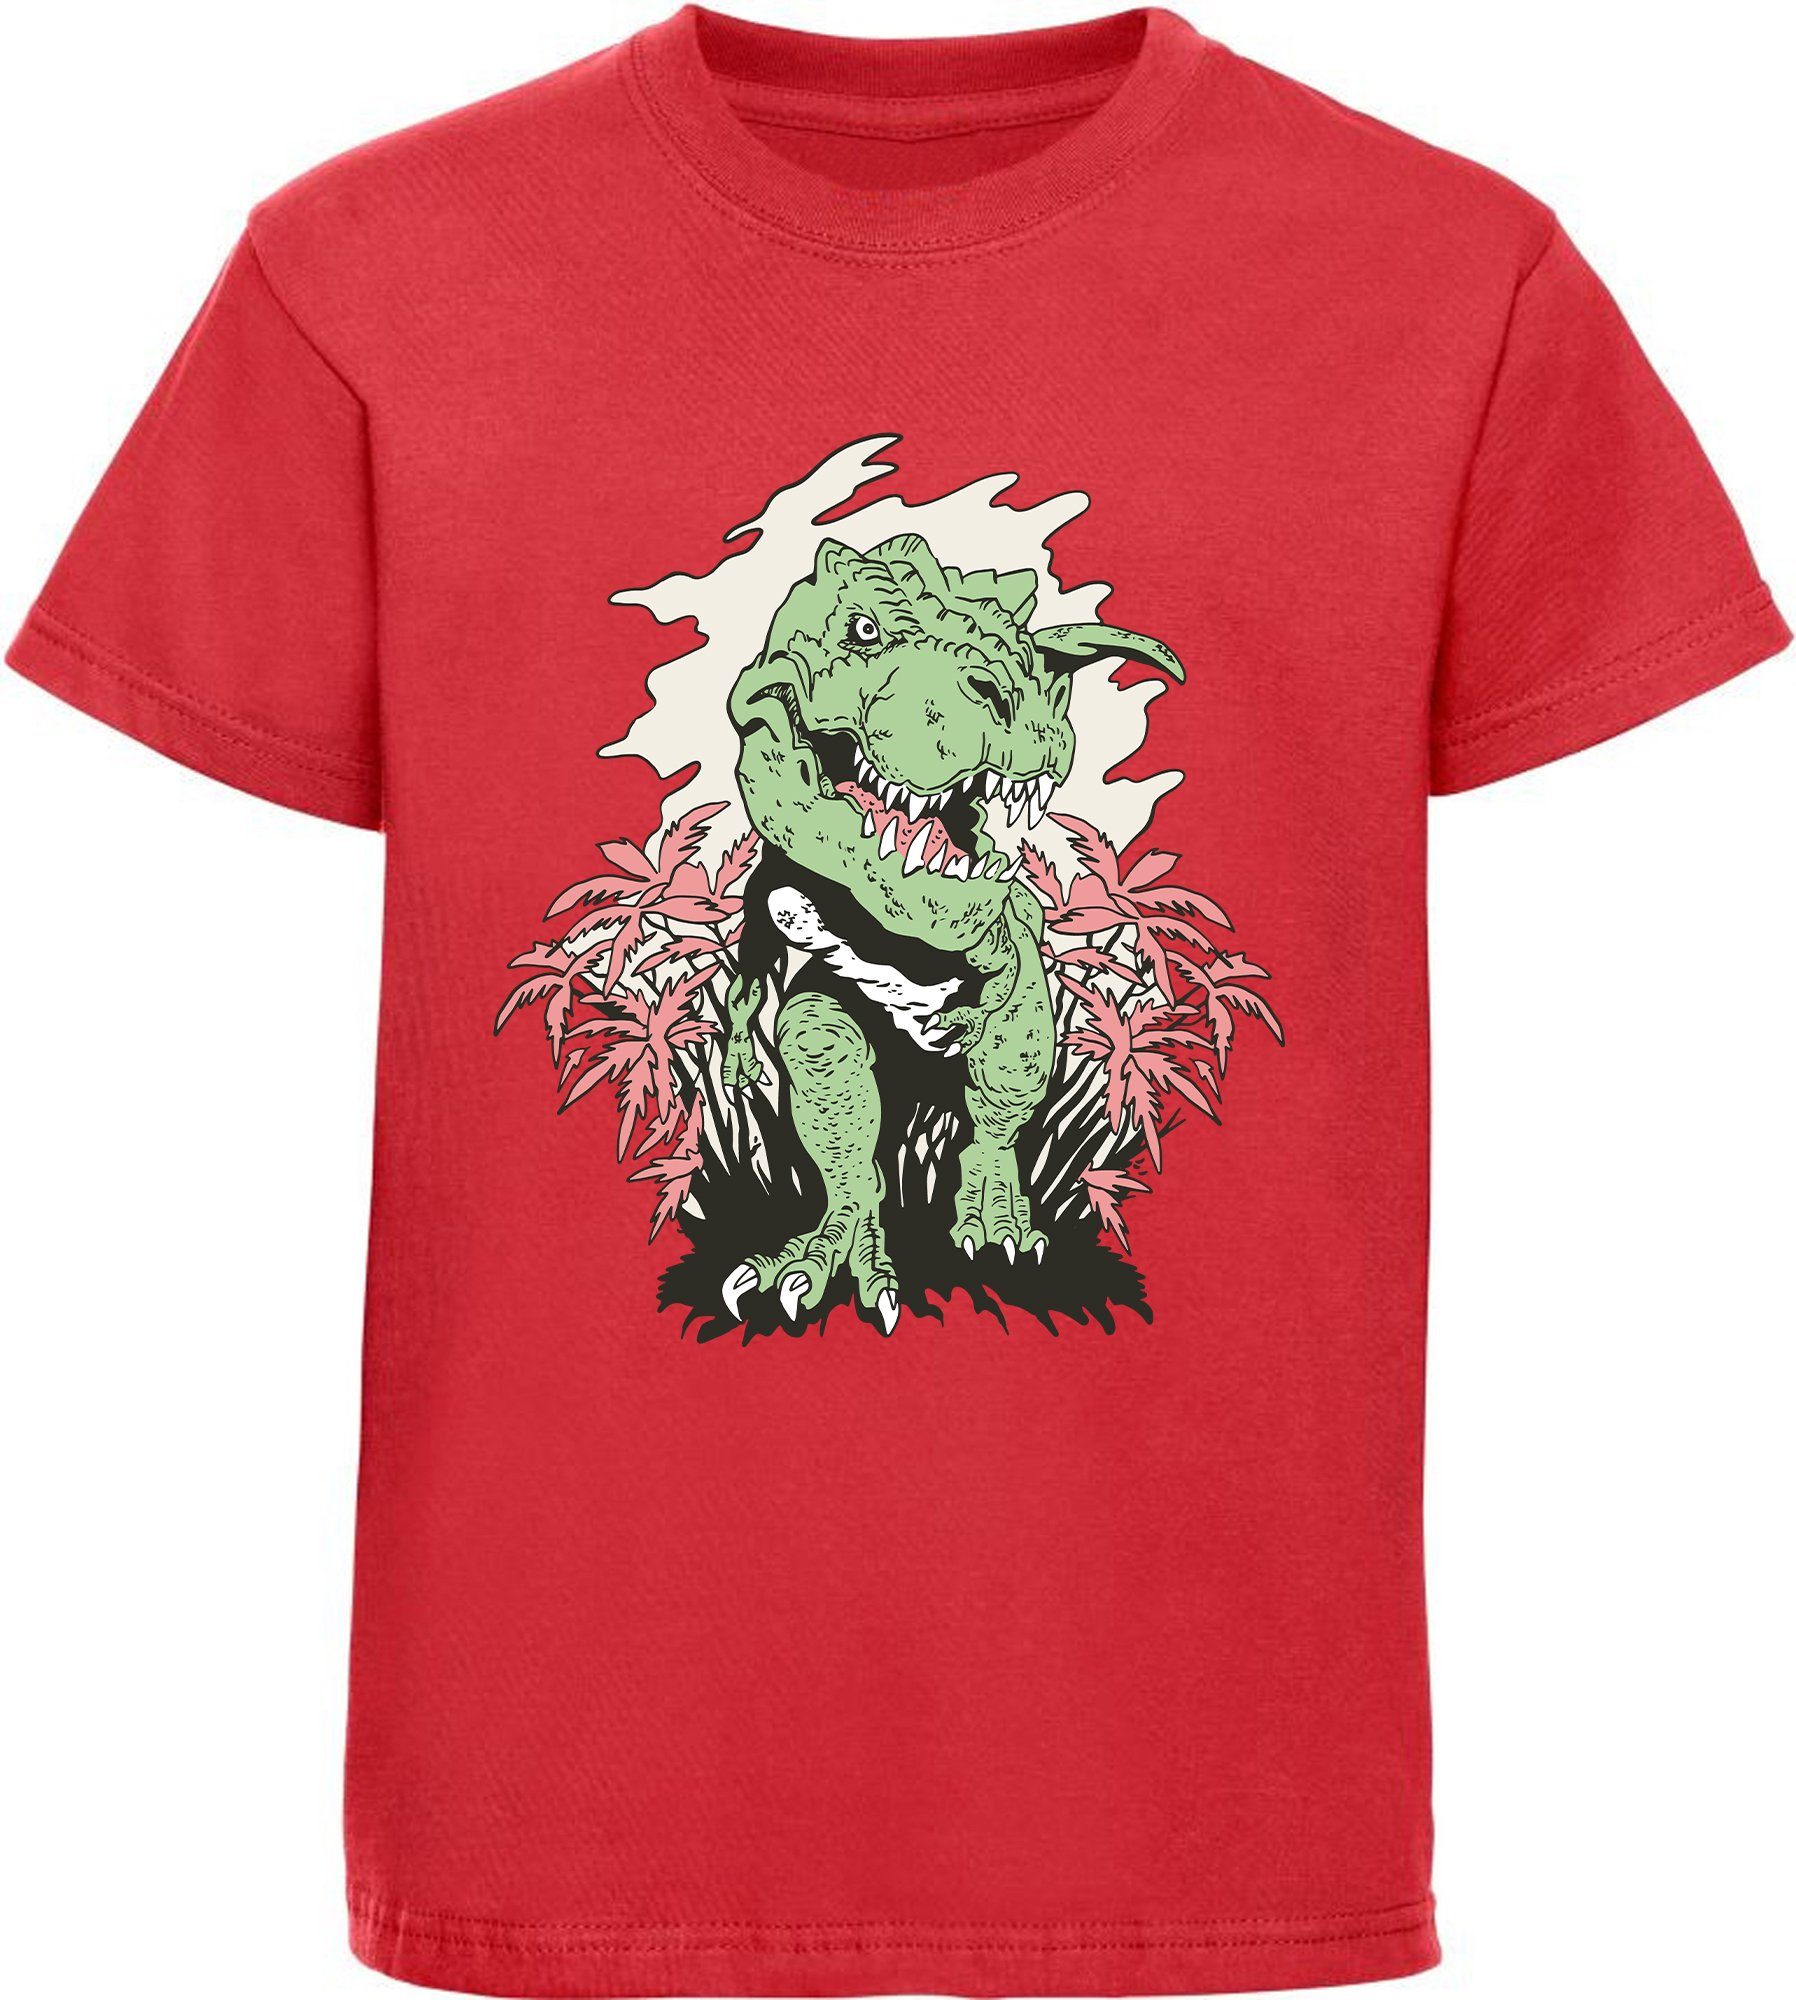 MyDesign24 Print-Shirt bedrucktes Kinder T-Shirt T-Rex der aus einem Busch kommt 100% Baumwolle mit Dino Aufdruck, schwarz, weiß, rot, blau, i101